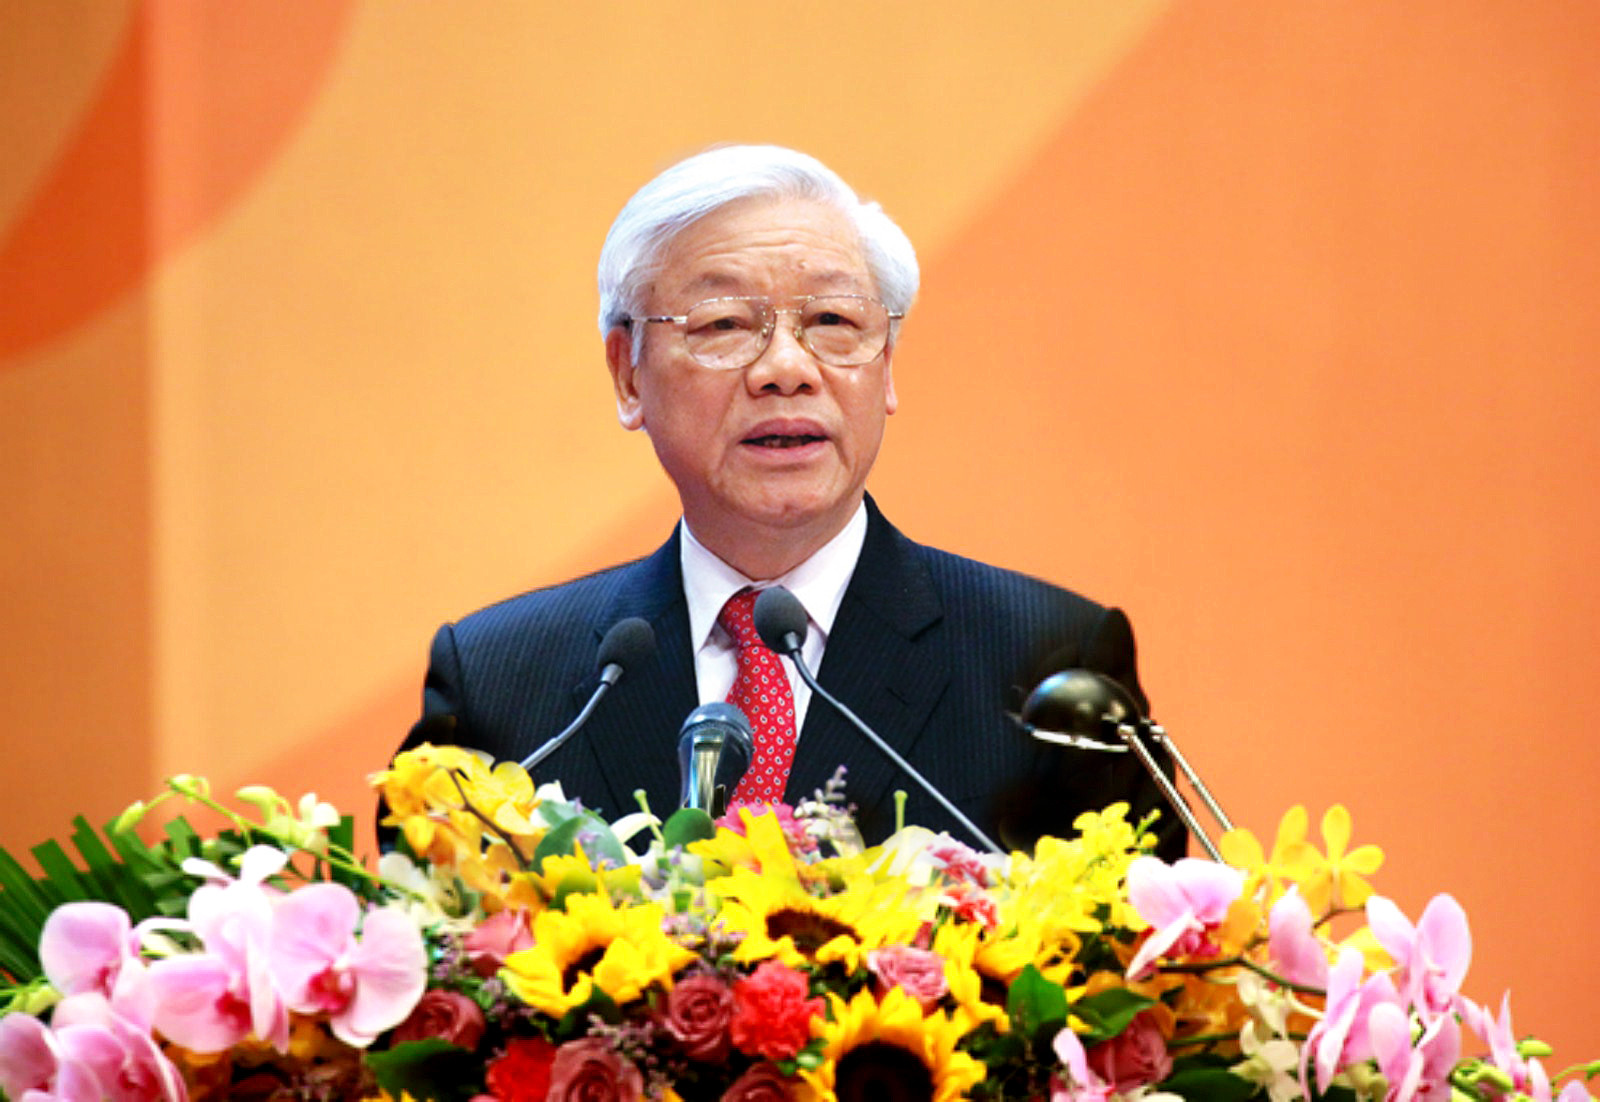 Tổng Bí thư, Chủ tịch nước Nguyễn Phú Trọng.